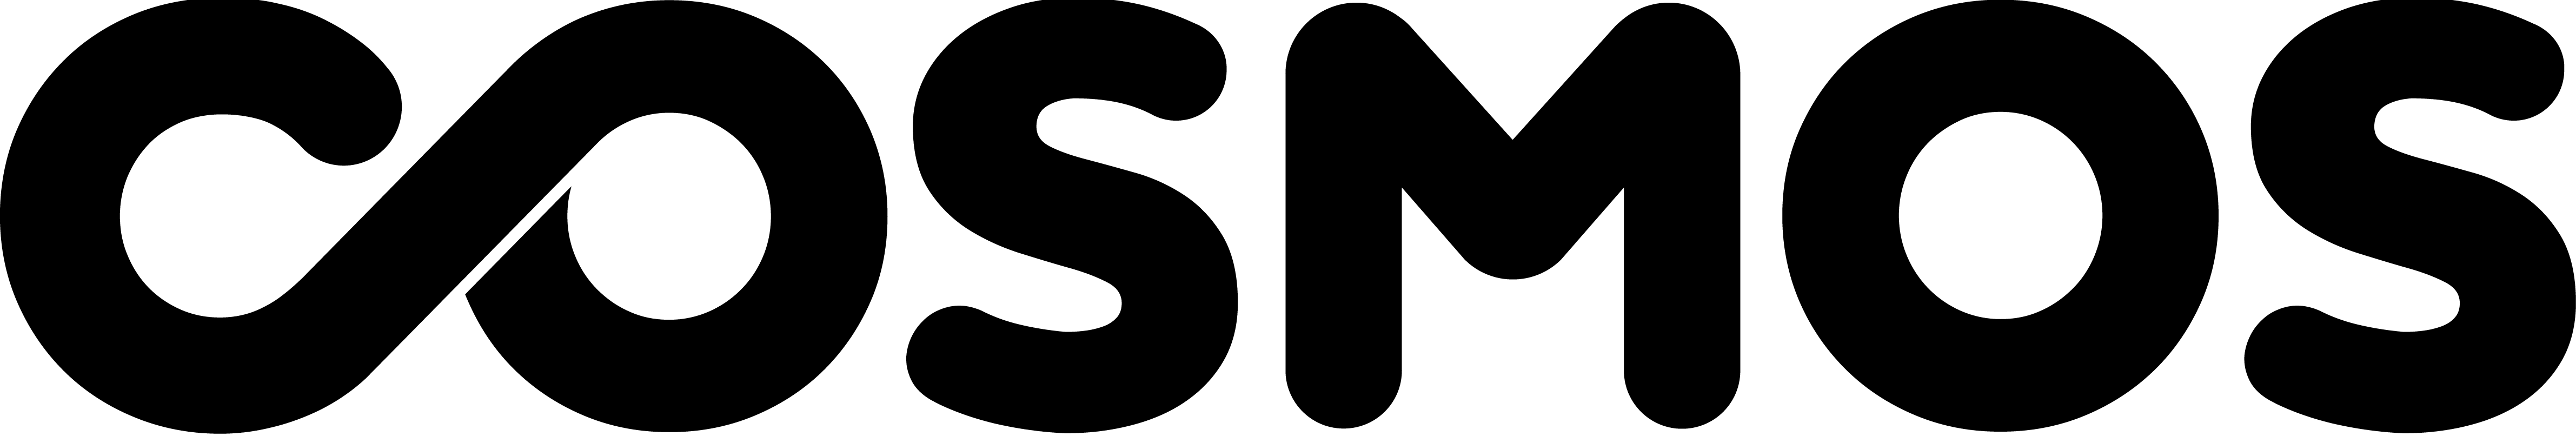 Logo Cosmos_ALTA